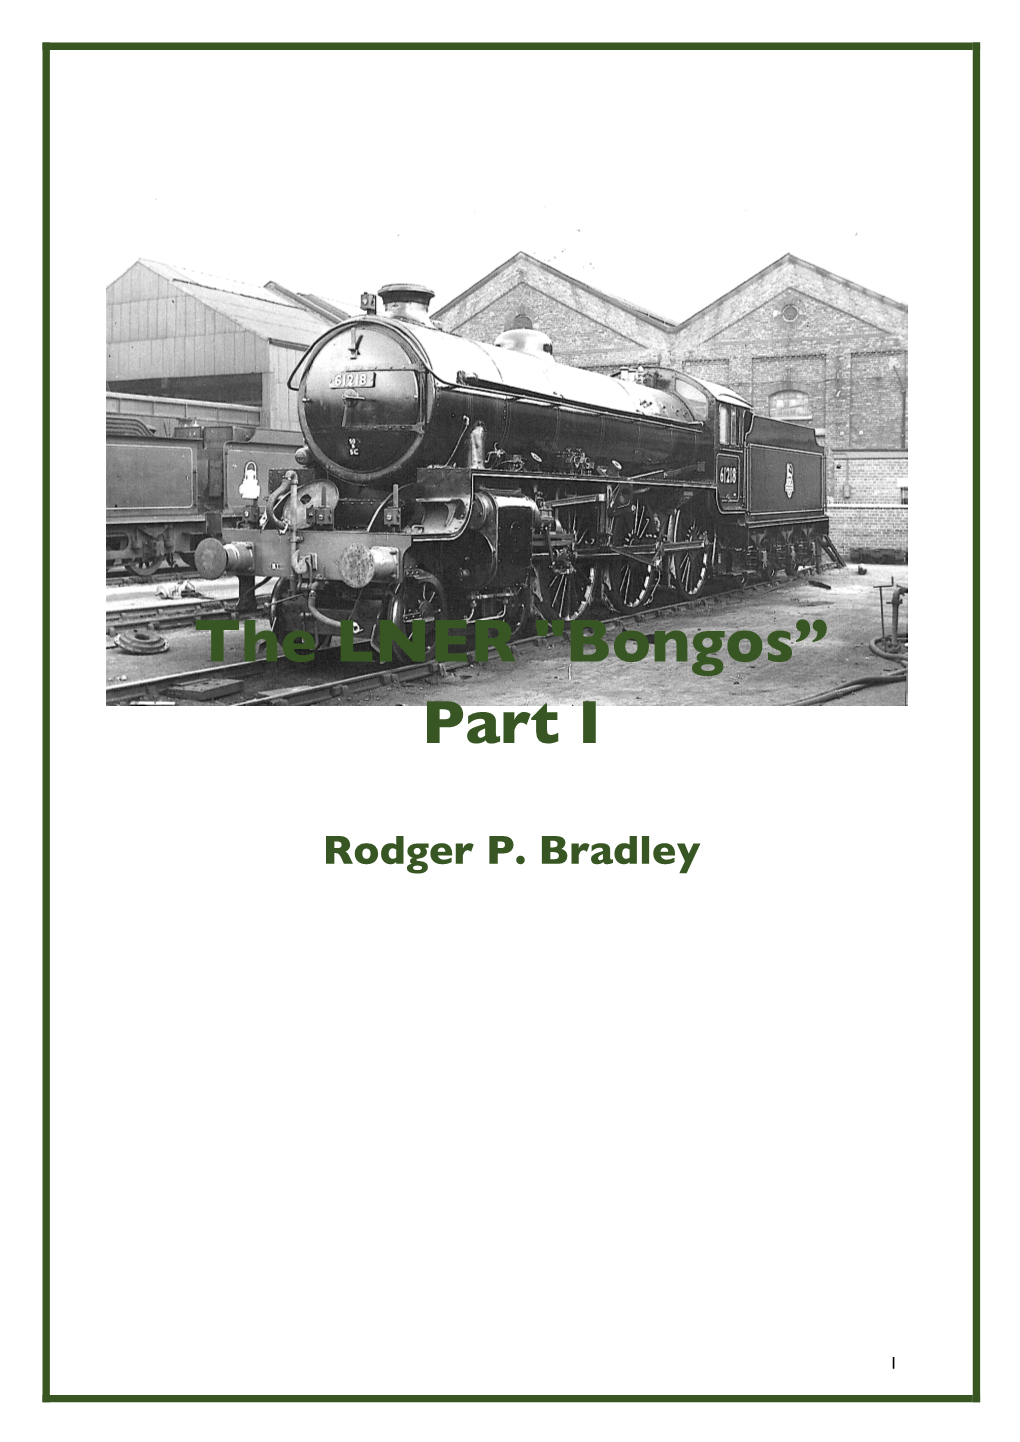 The LNER "Bongos” Part I